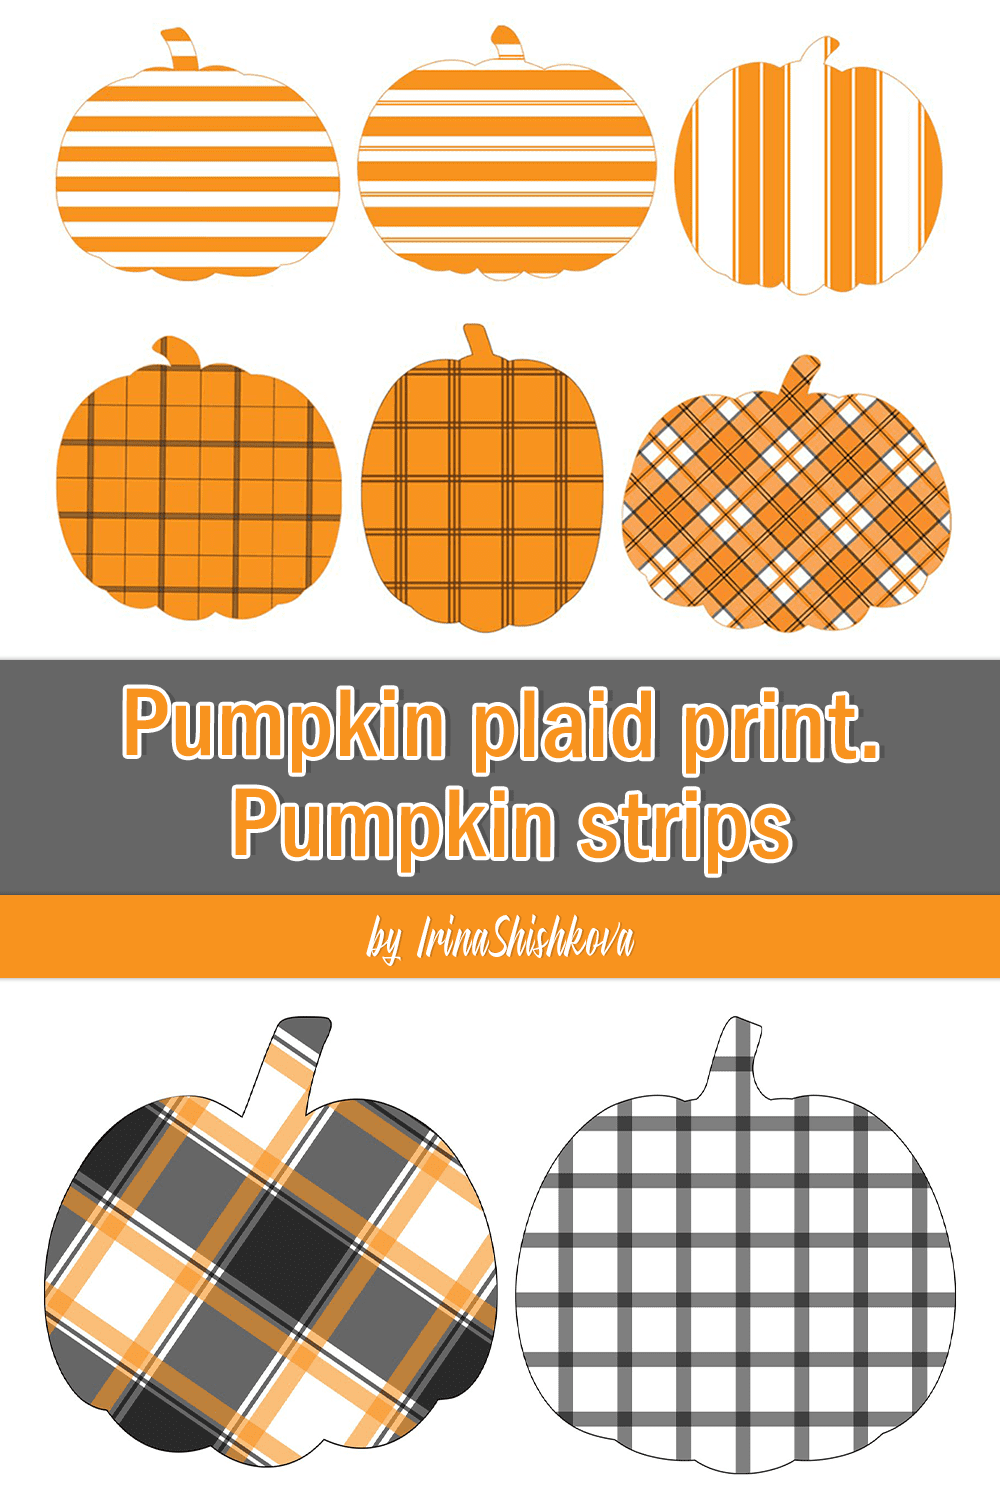 pumpkin plaid print. pumpkin strips pinterest